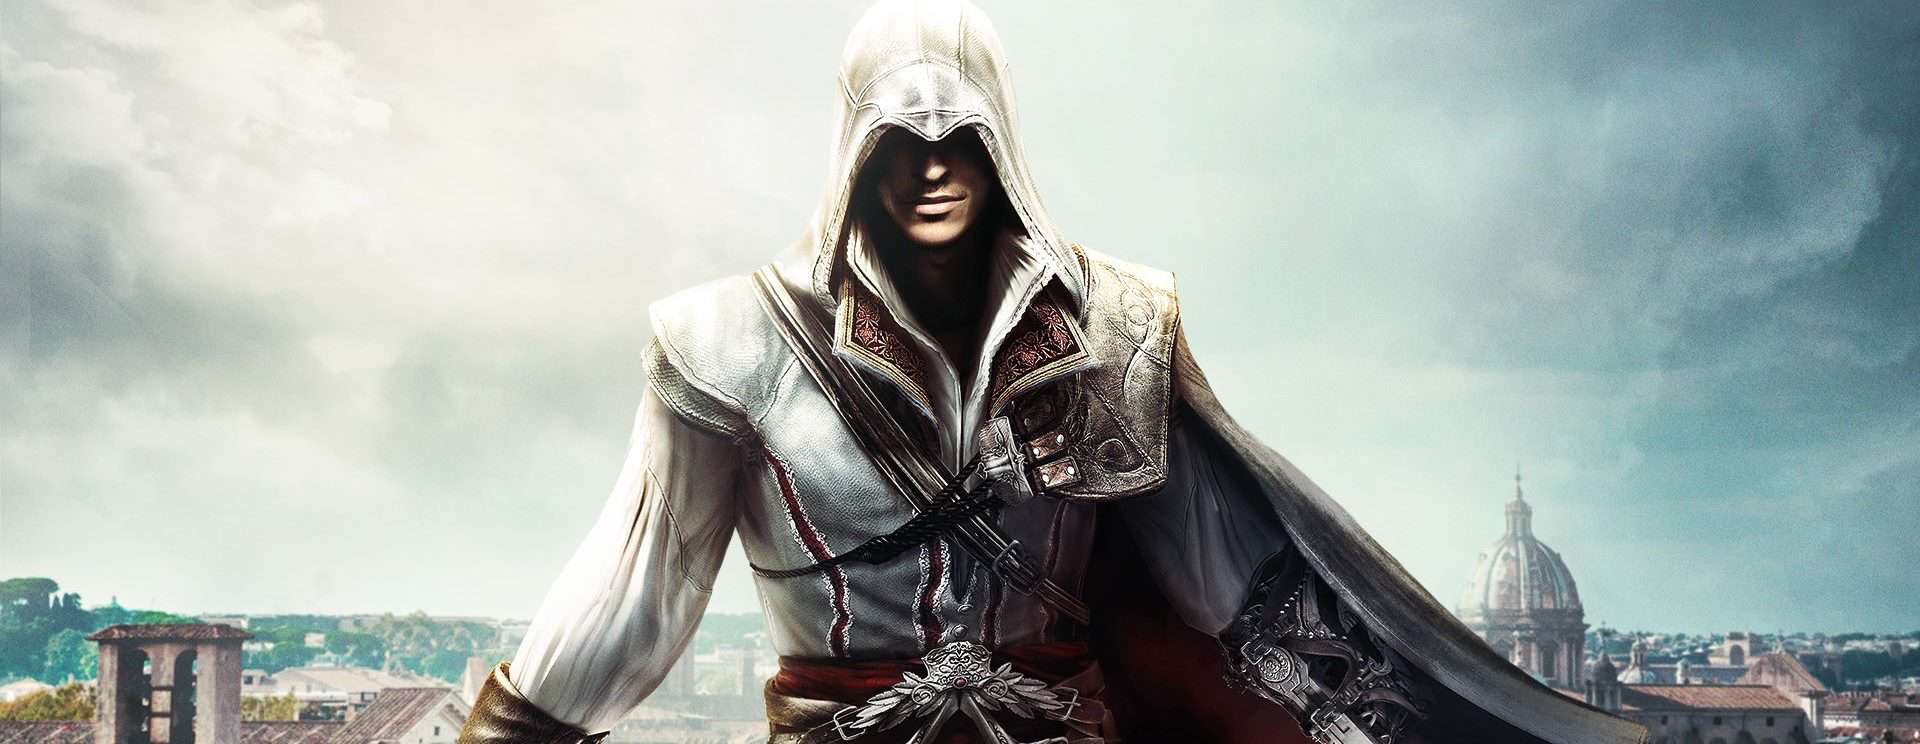 Orden de los juegos de Assassin's Creed